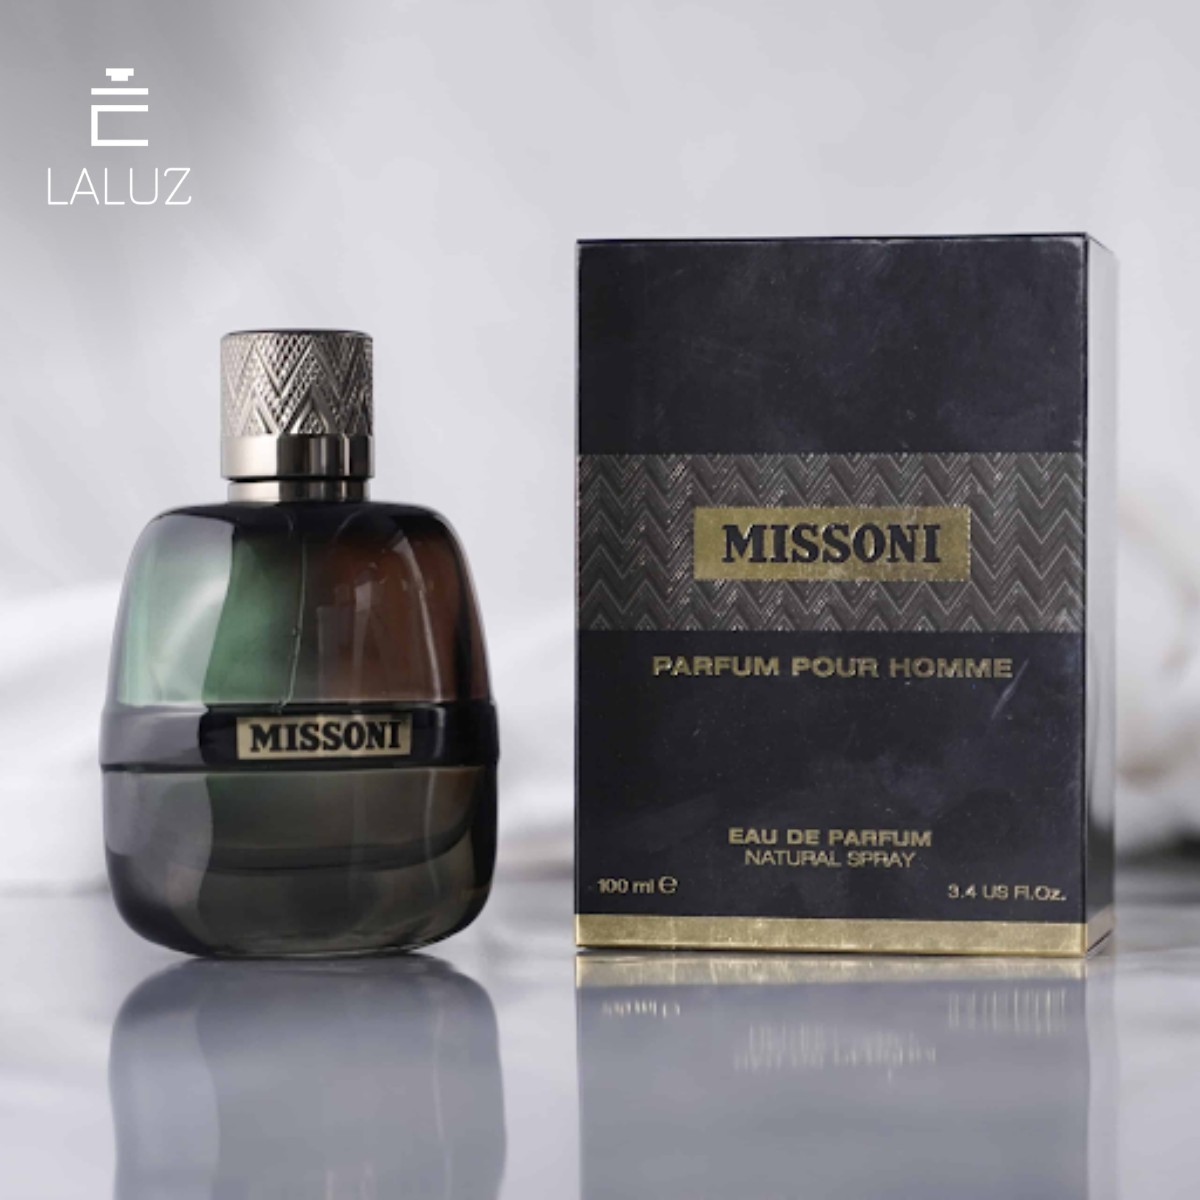 Thiết kế độc đáo của Missoni Perfume